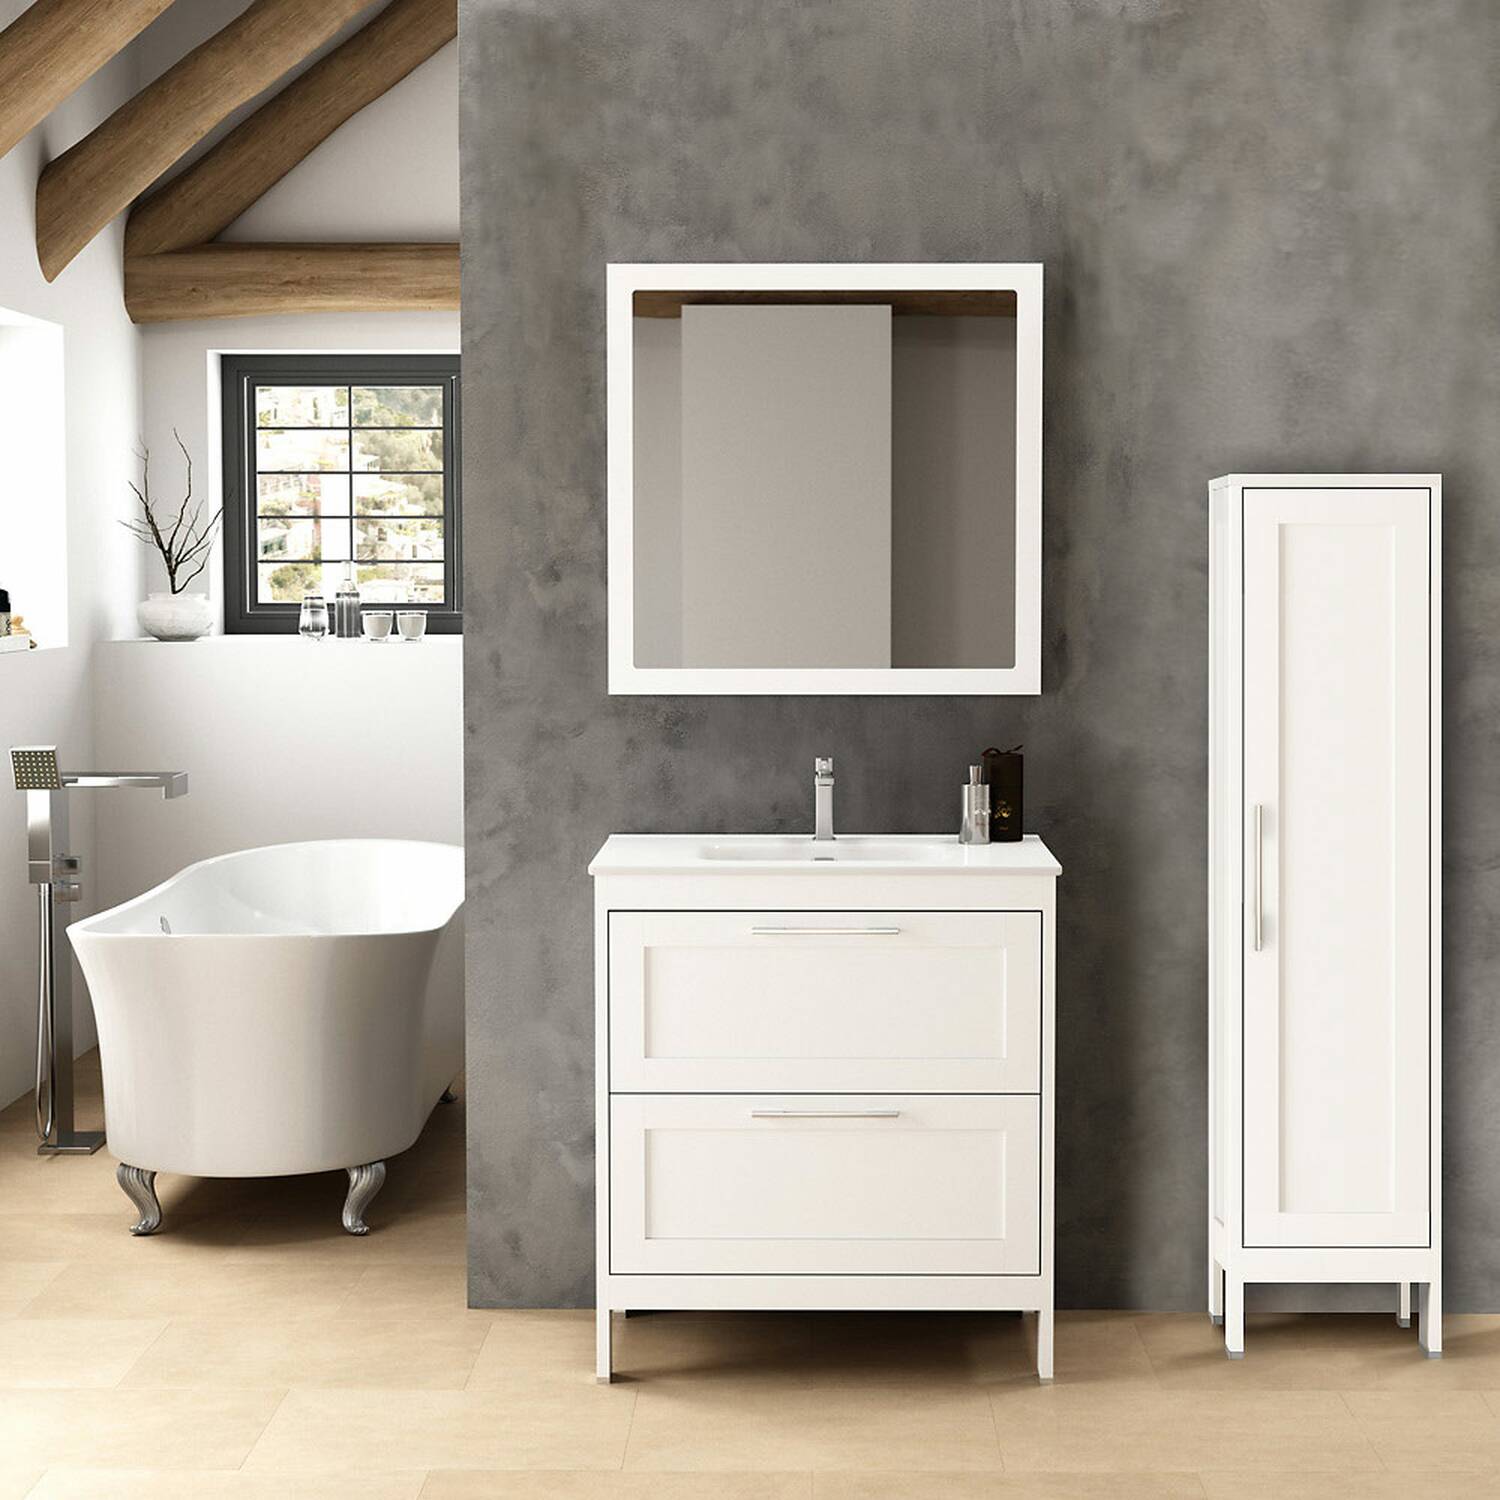 Landhaus Badmöbel Set mit Hochschrank & Spiegel matt weiß ca. 135/200/45cm modern helle Badezimmer Möbel Badschrank hochwertig